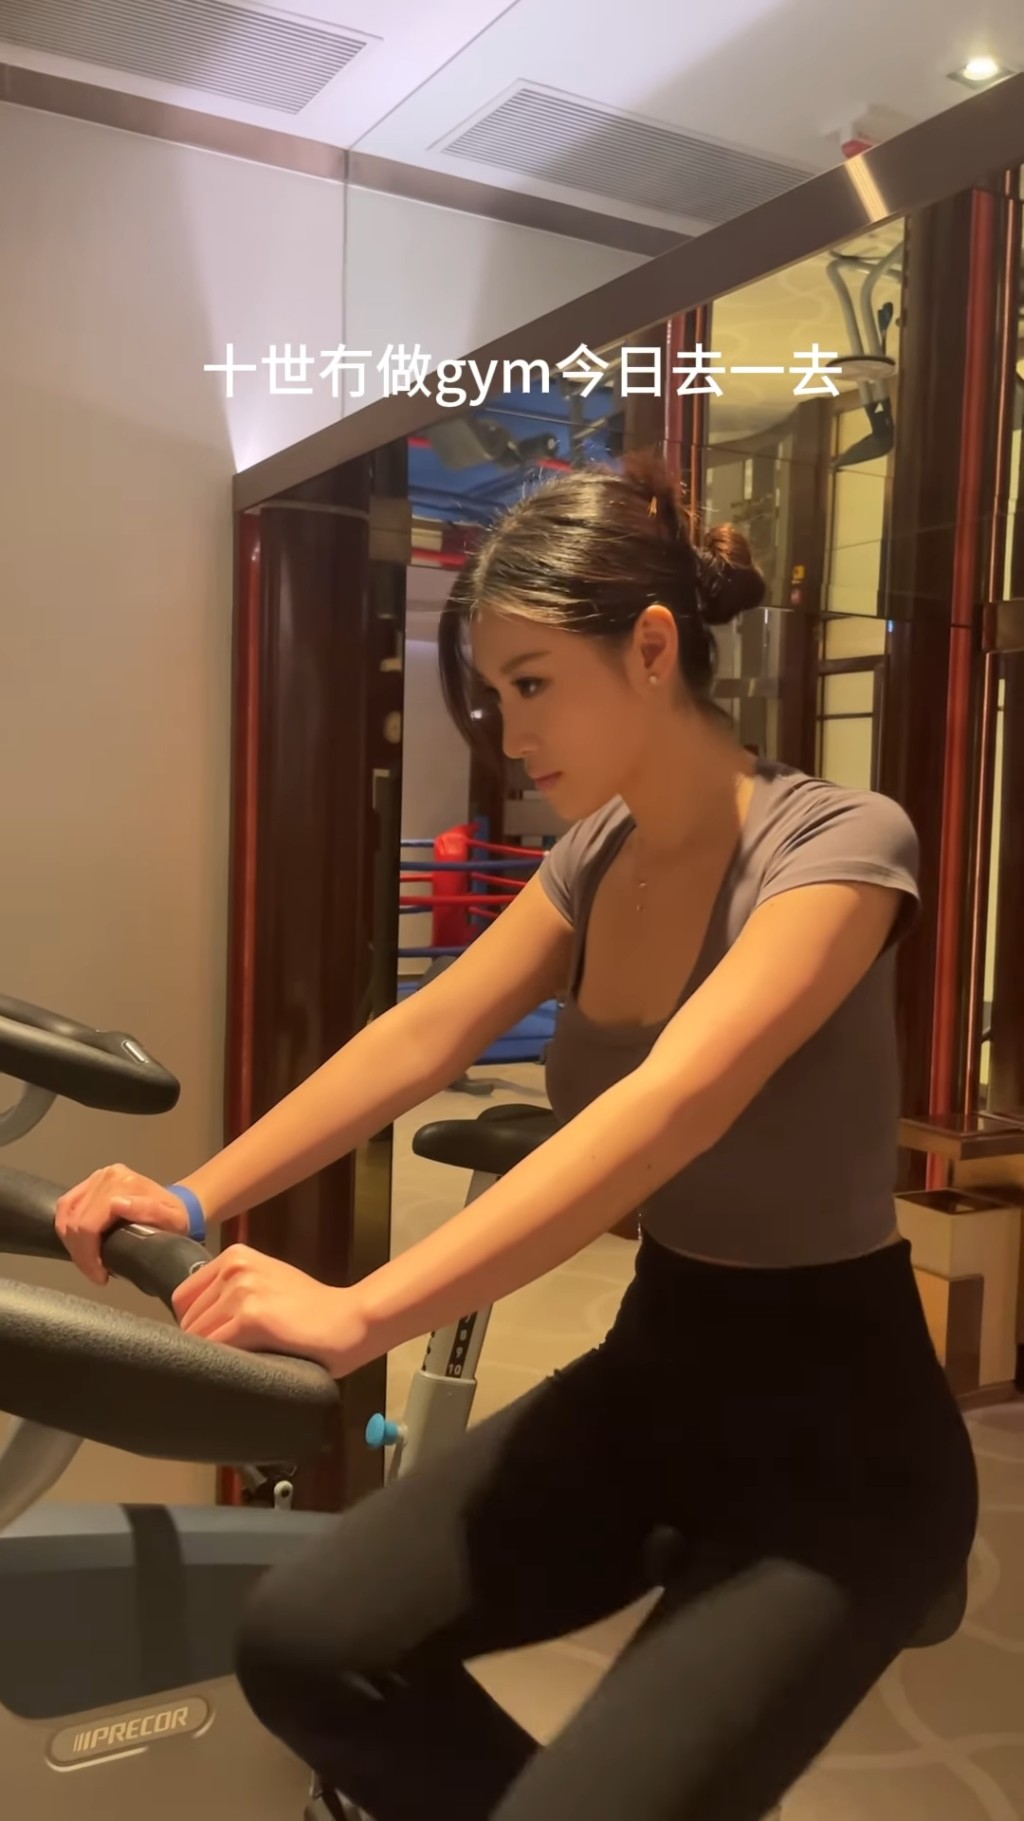 郭珮文昨日（25日）在社交網分享一段在健身室的影片。